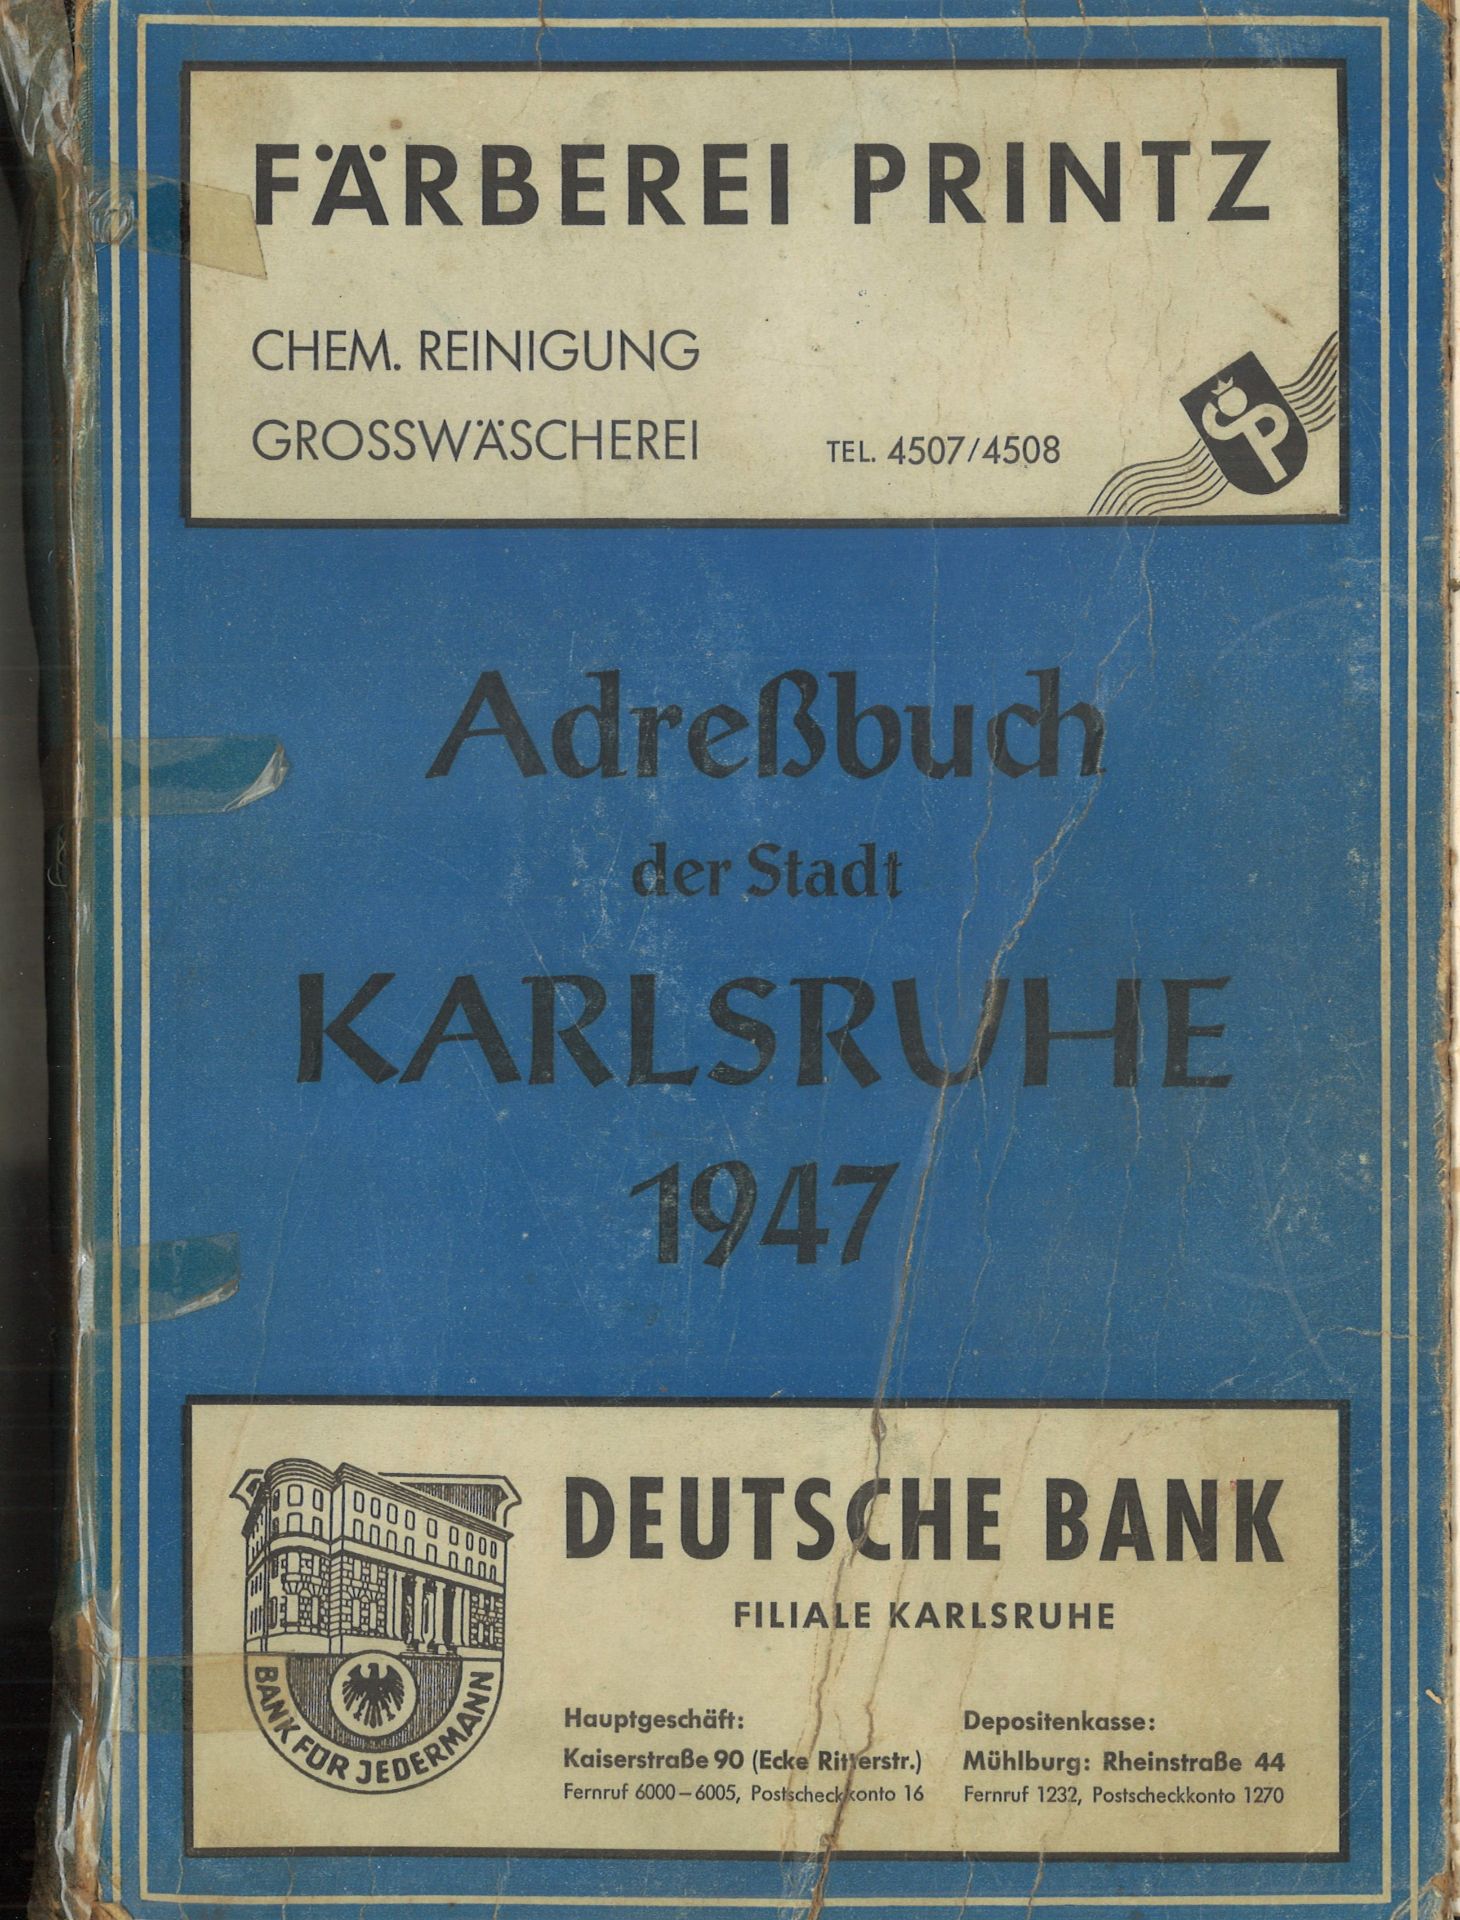 Adressbuch der Stadt Karlsruhe von 1947, zweiundsiebzigster Jahrgang, Adressbuchverlag G. Braun,